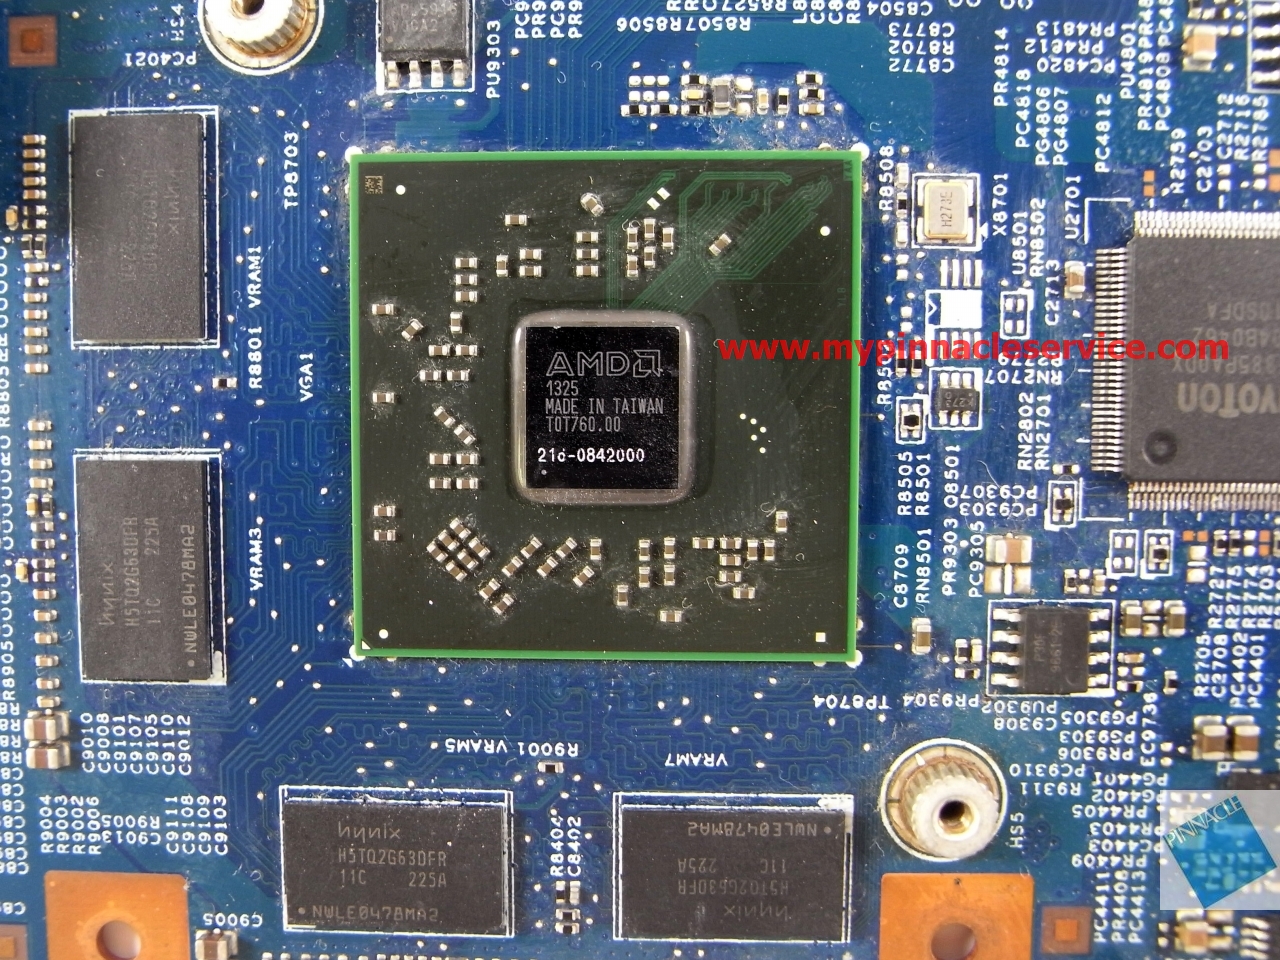 48.4l903.01m-motherboard-for-acer-aspire-e1-451g-ea40-cm-mb-r0010346.jpg